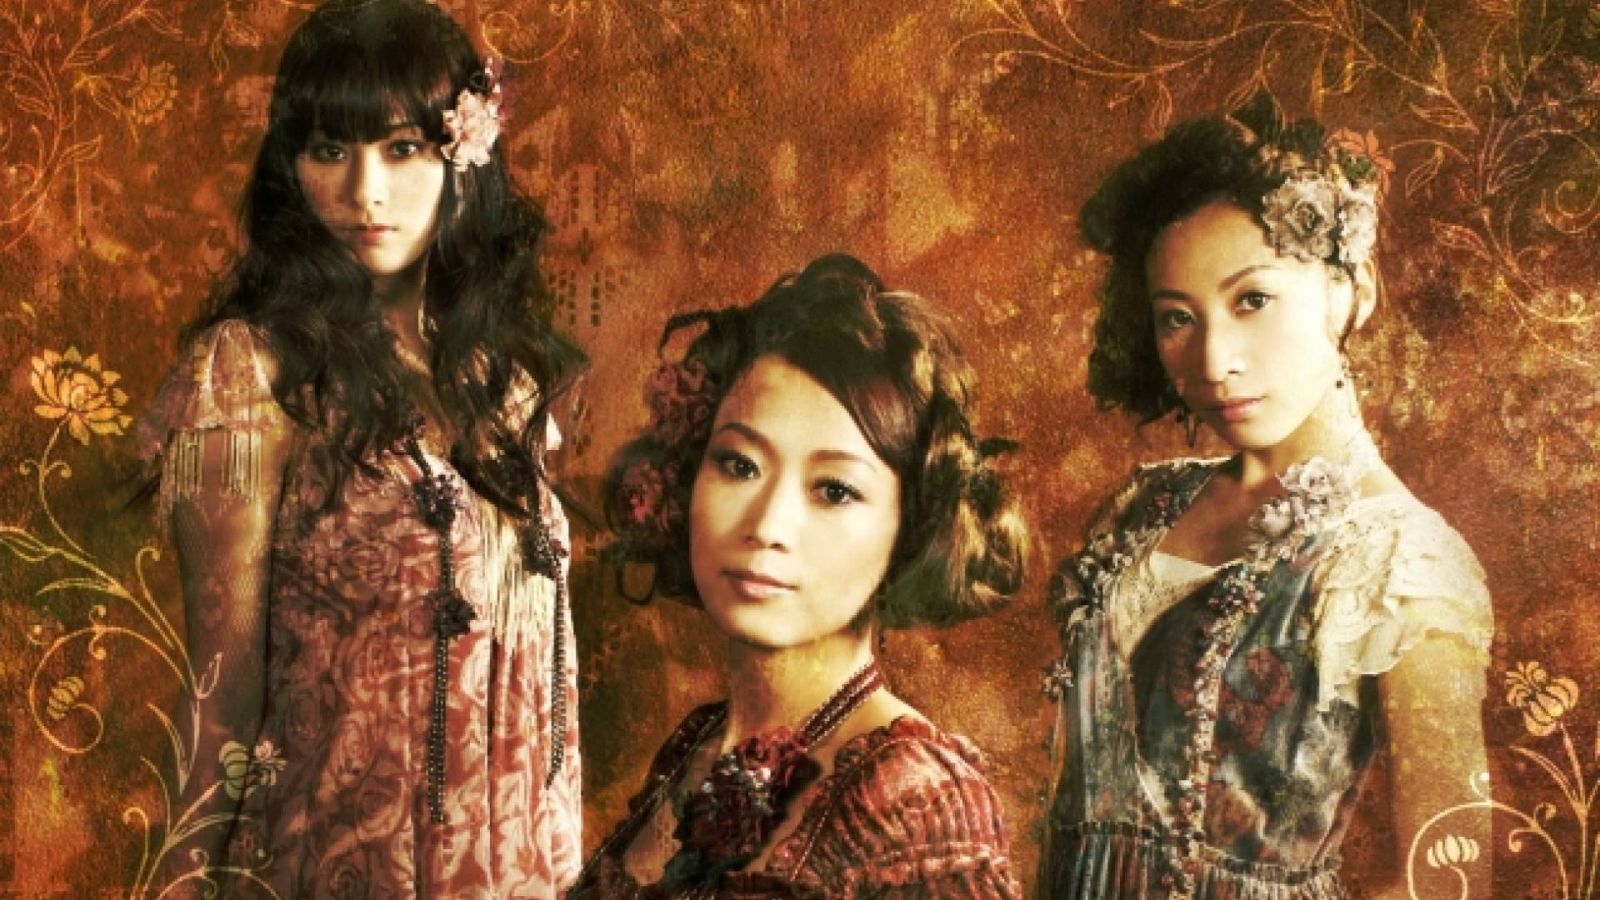 Primer lanzamiento de DVD y Blu-ray  de Kalafina  © Sony Music Entertainment (Japan) Inc.